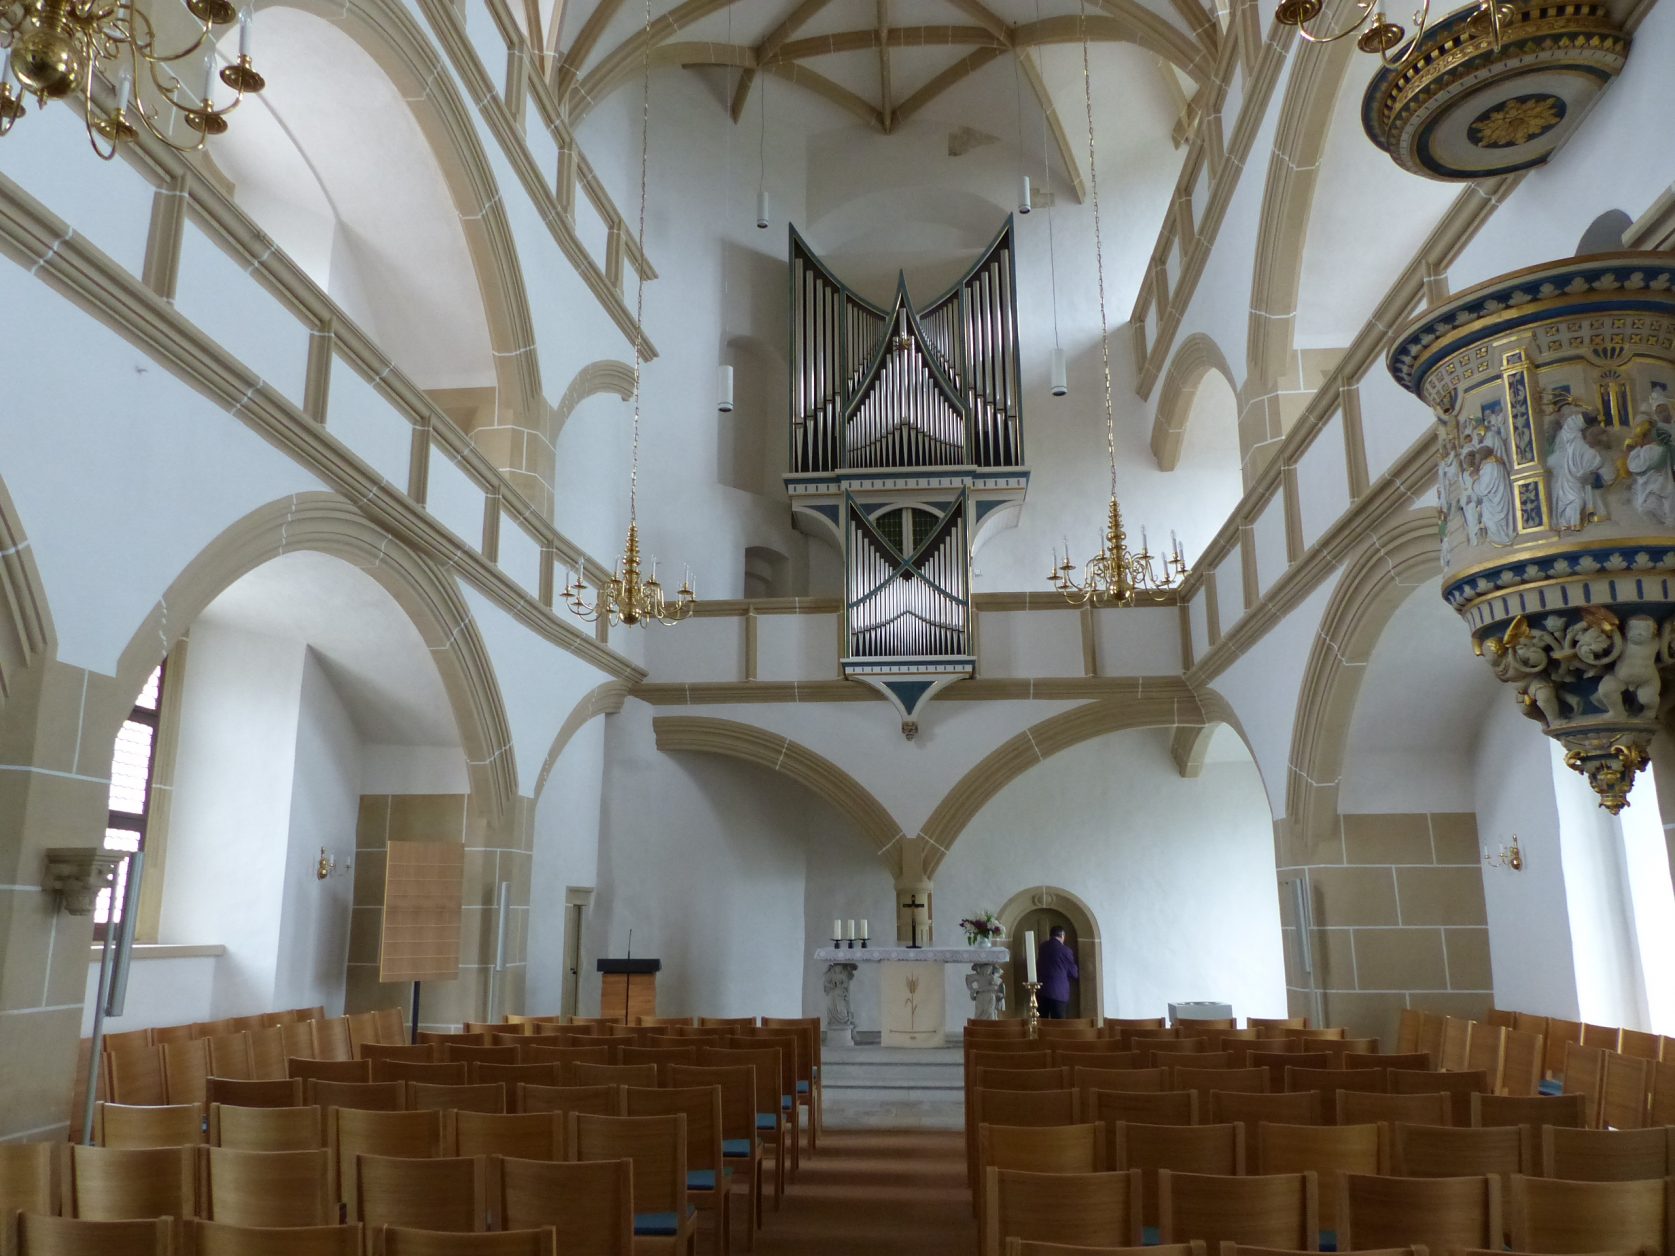 1544 wurde die Schlosskapelle als erste protestantische Kirche von Luther geweiht